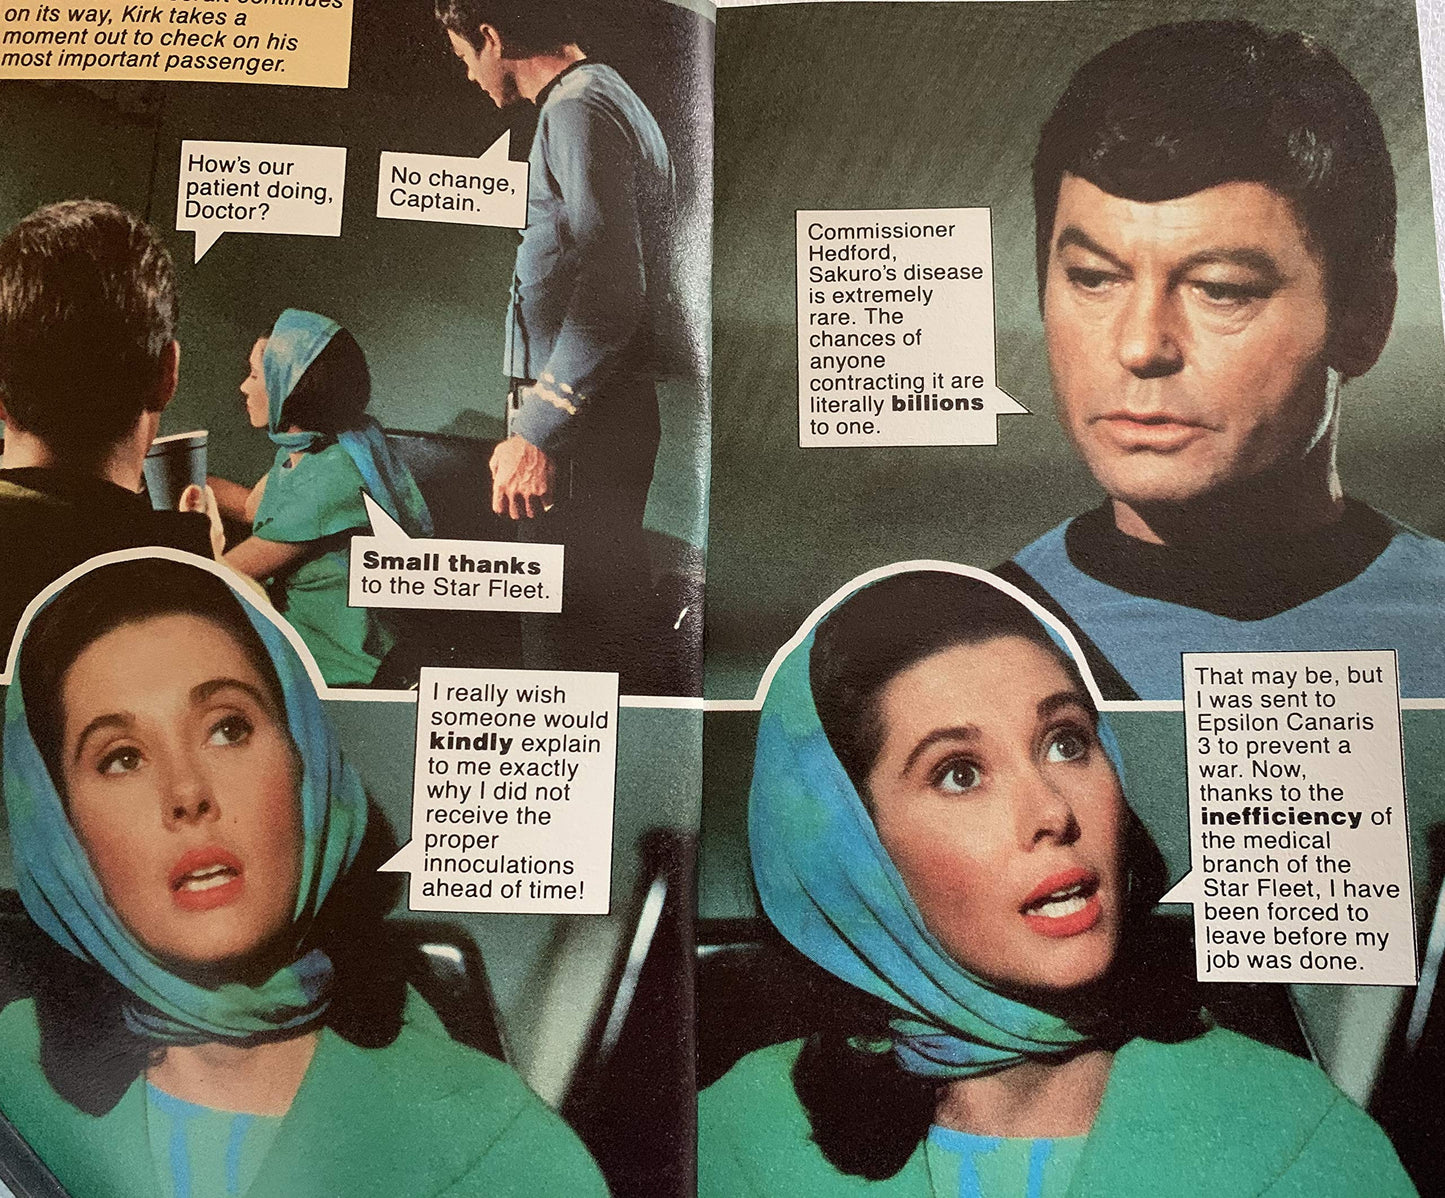 Vintage 1978 Star Trek Fotonovel No. 5 Metamorphosis Paperback Book - Former Shop Stock